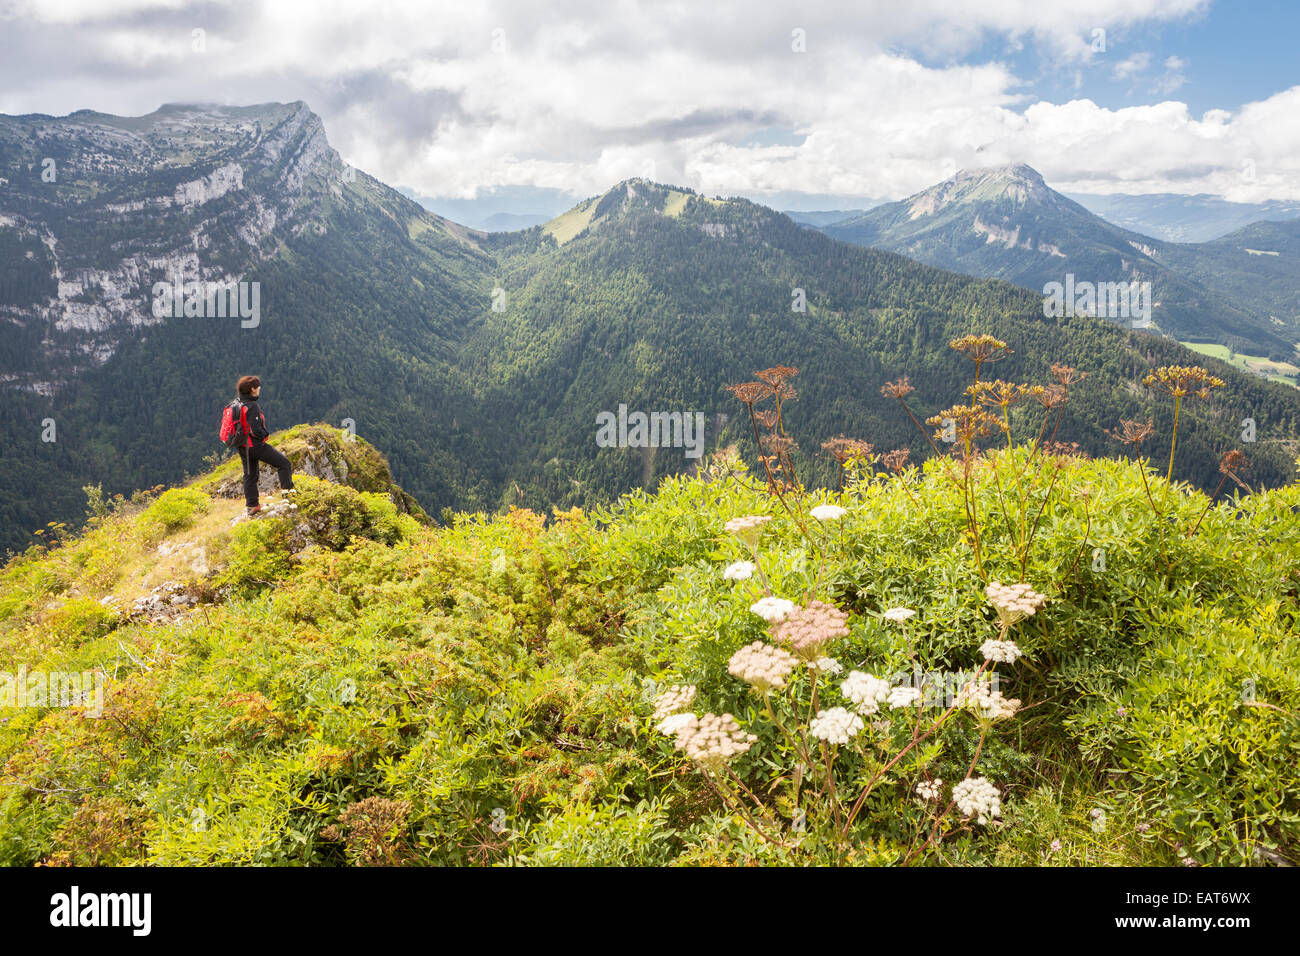 View of the Chamechaude and Dent de Crolles peaks, Parc Naturel de la Chartreuse, Isere, Rhône-Alpes, France Stock Photo